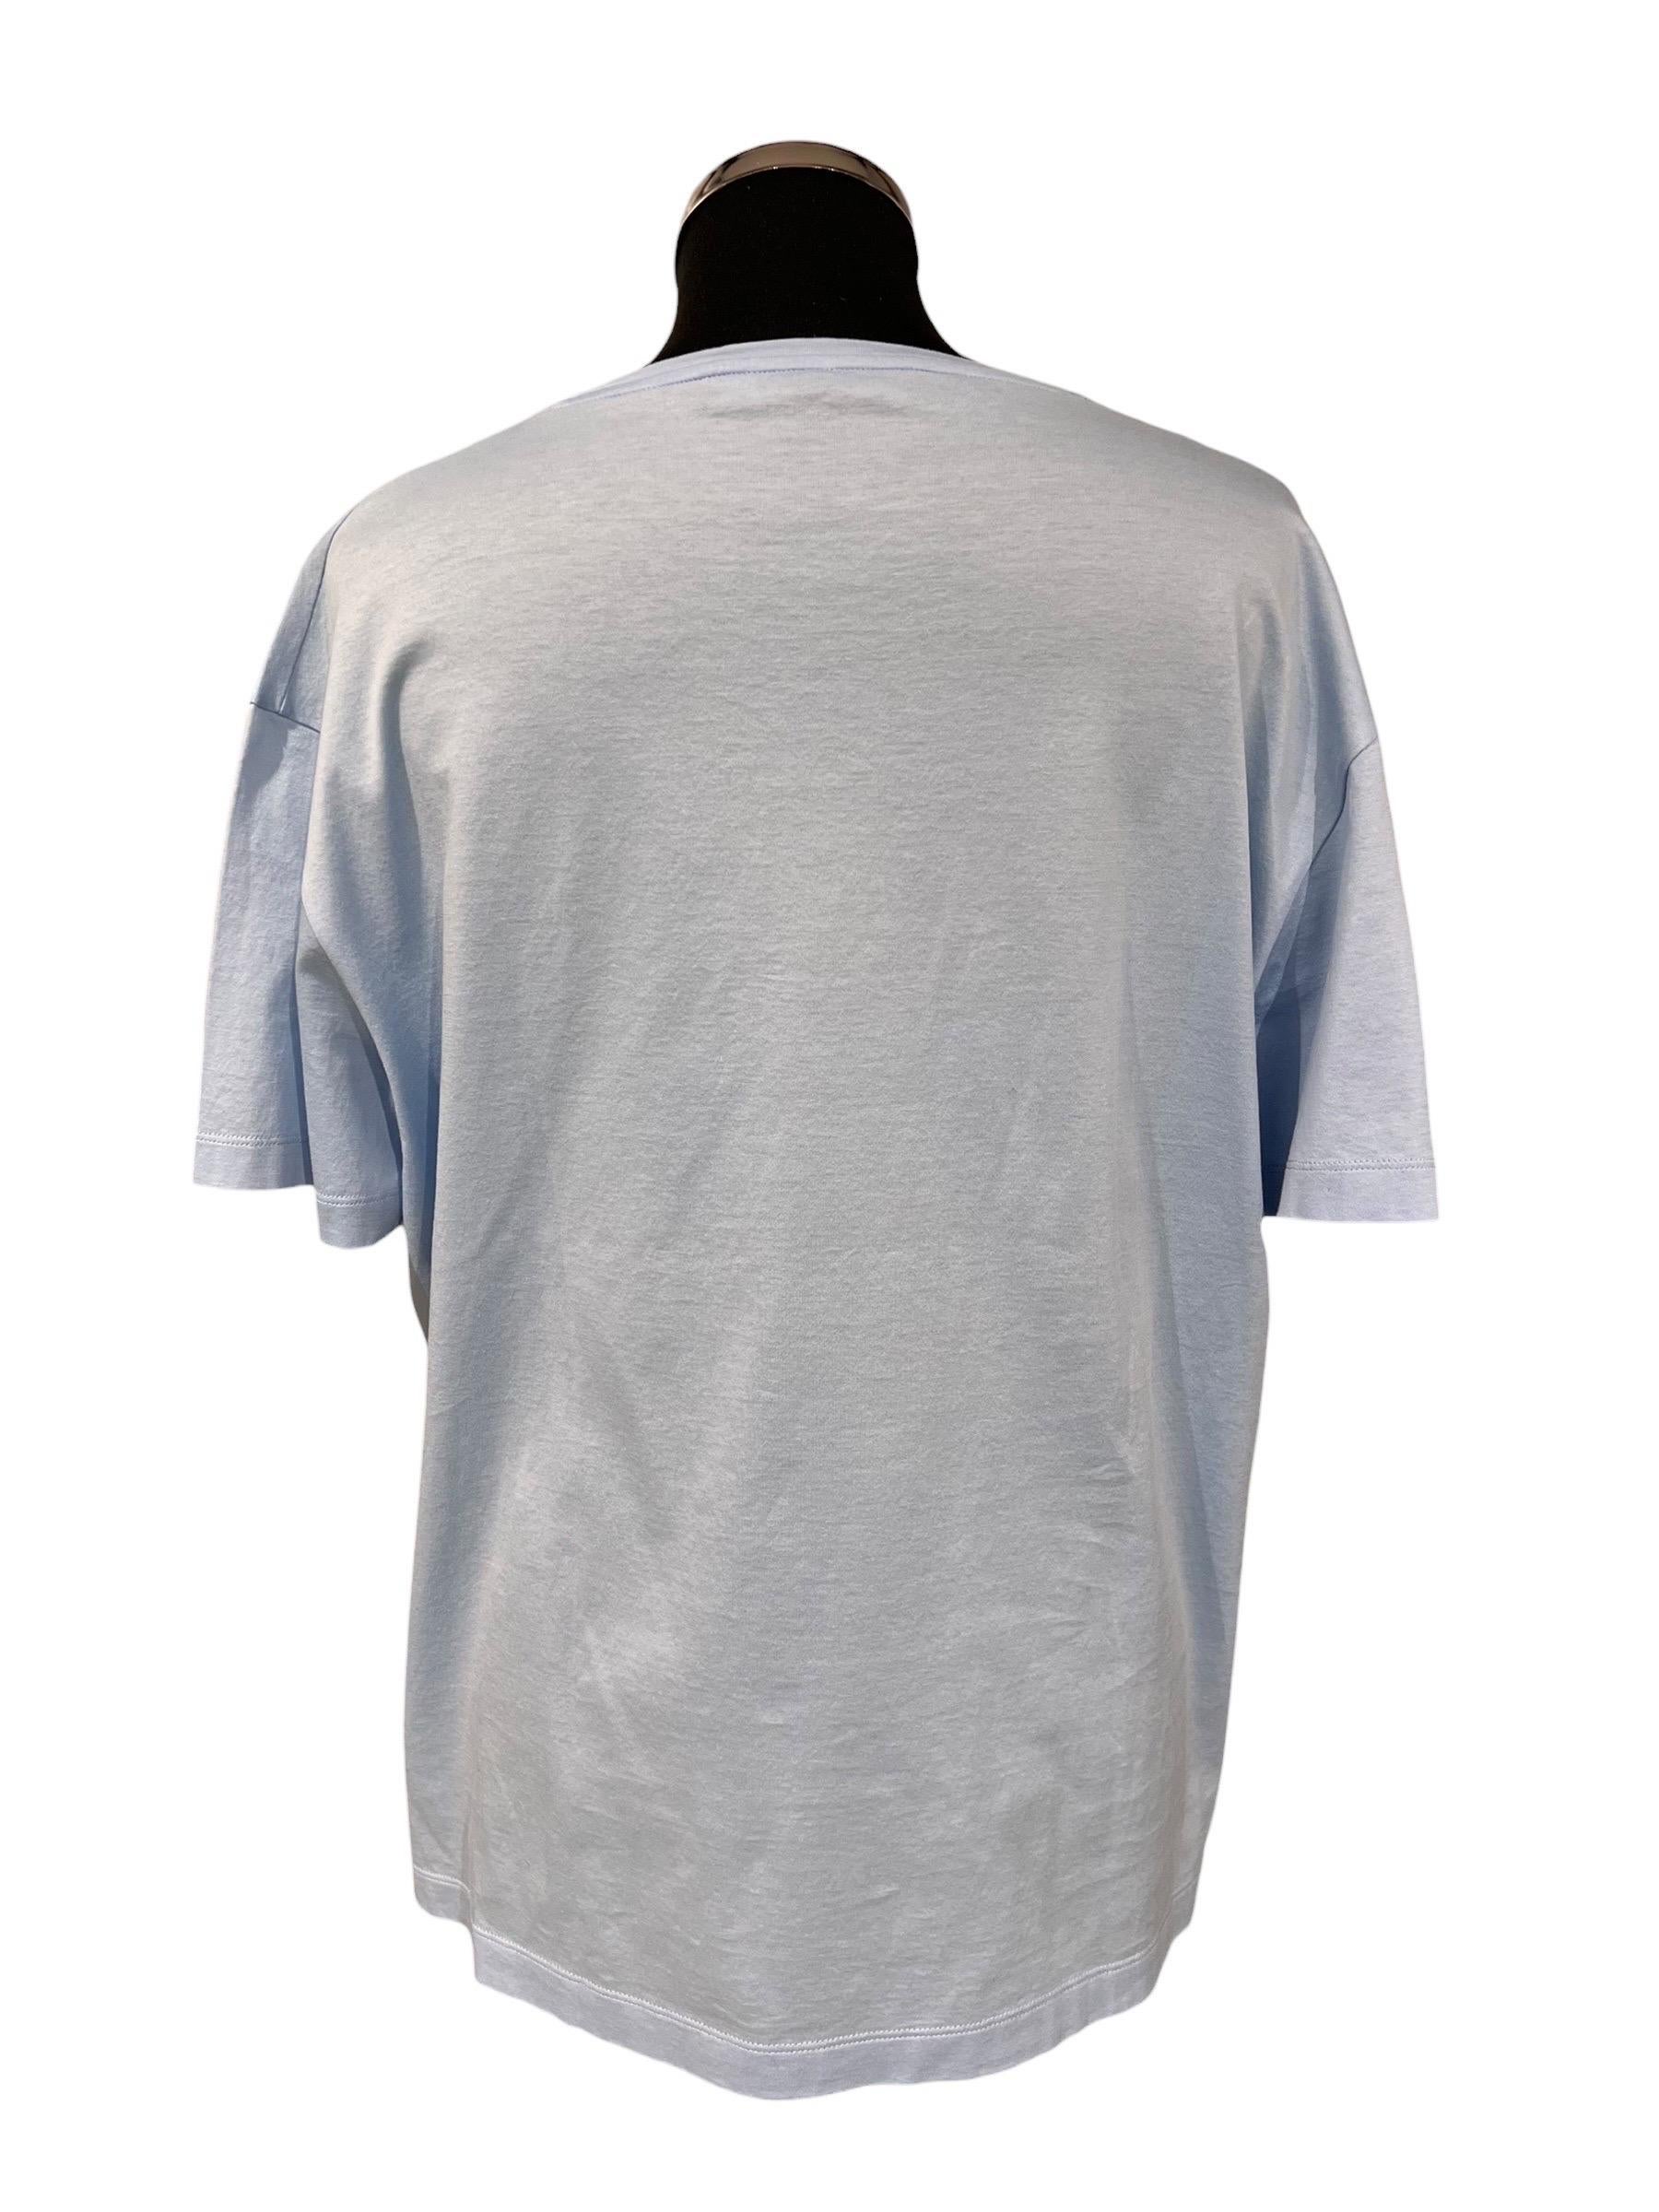 T-shirt Versace, réalisé en coton de couleur céleste avec le logo de la marque en rilievo ricamato de couleur bleue sur la partie frontale. Taglia